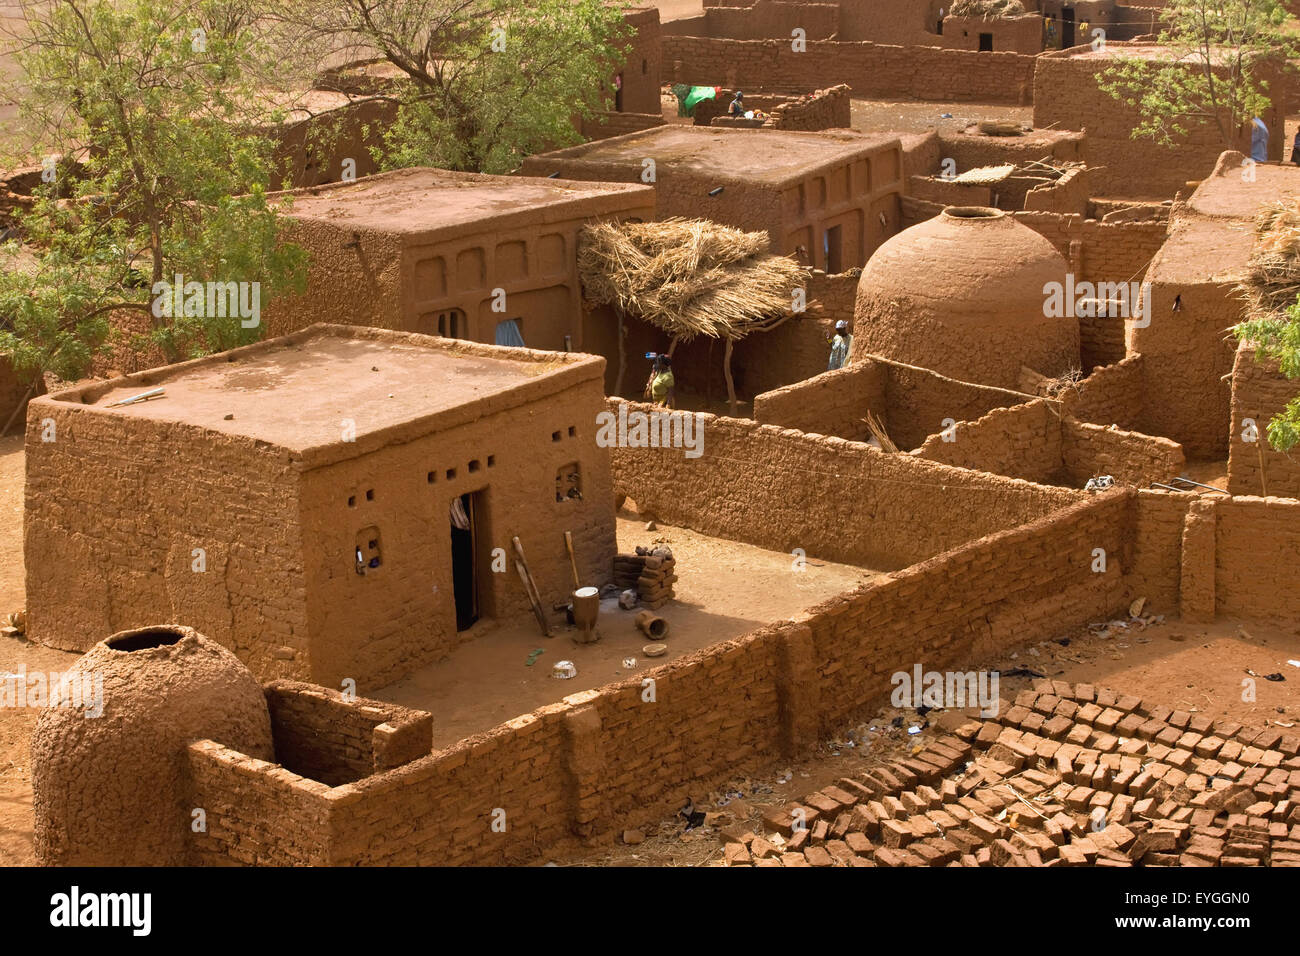 Au Niger, le Centre du Niger, Tahoa, du toit de sa célèbre mosquée de vendredi ; Yaama Village, vue aérienne du Village de Yaama Banque D'Images